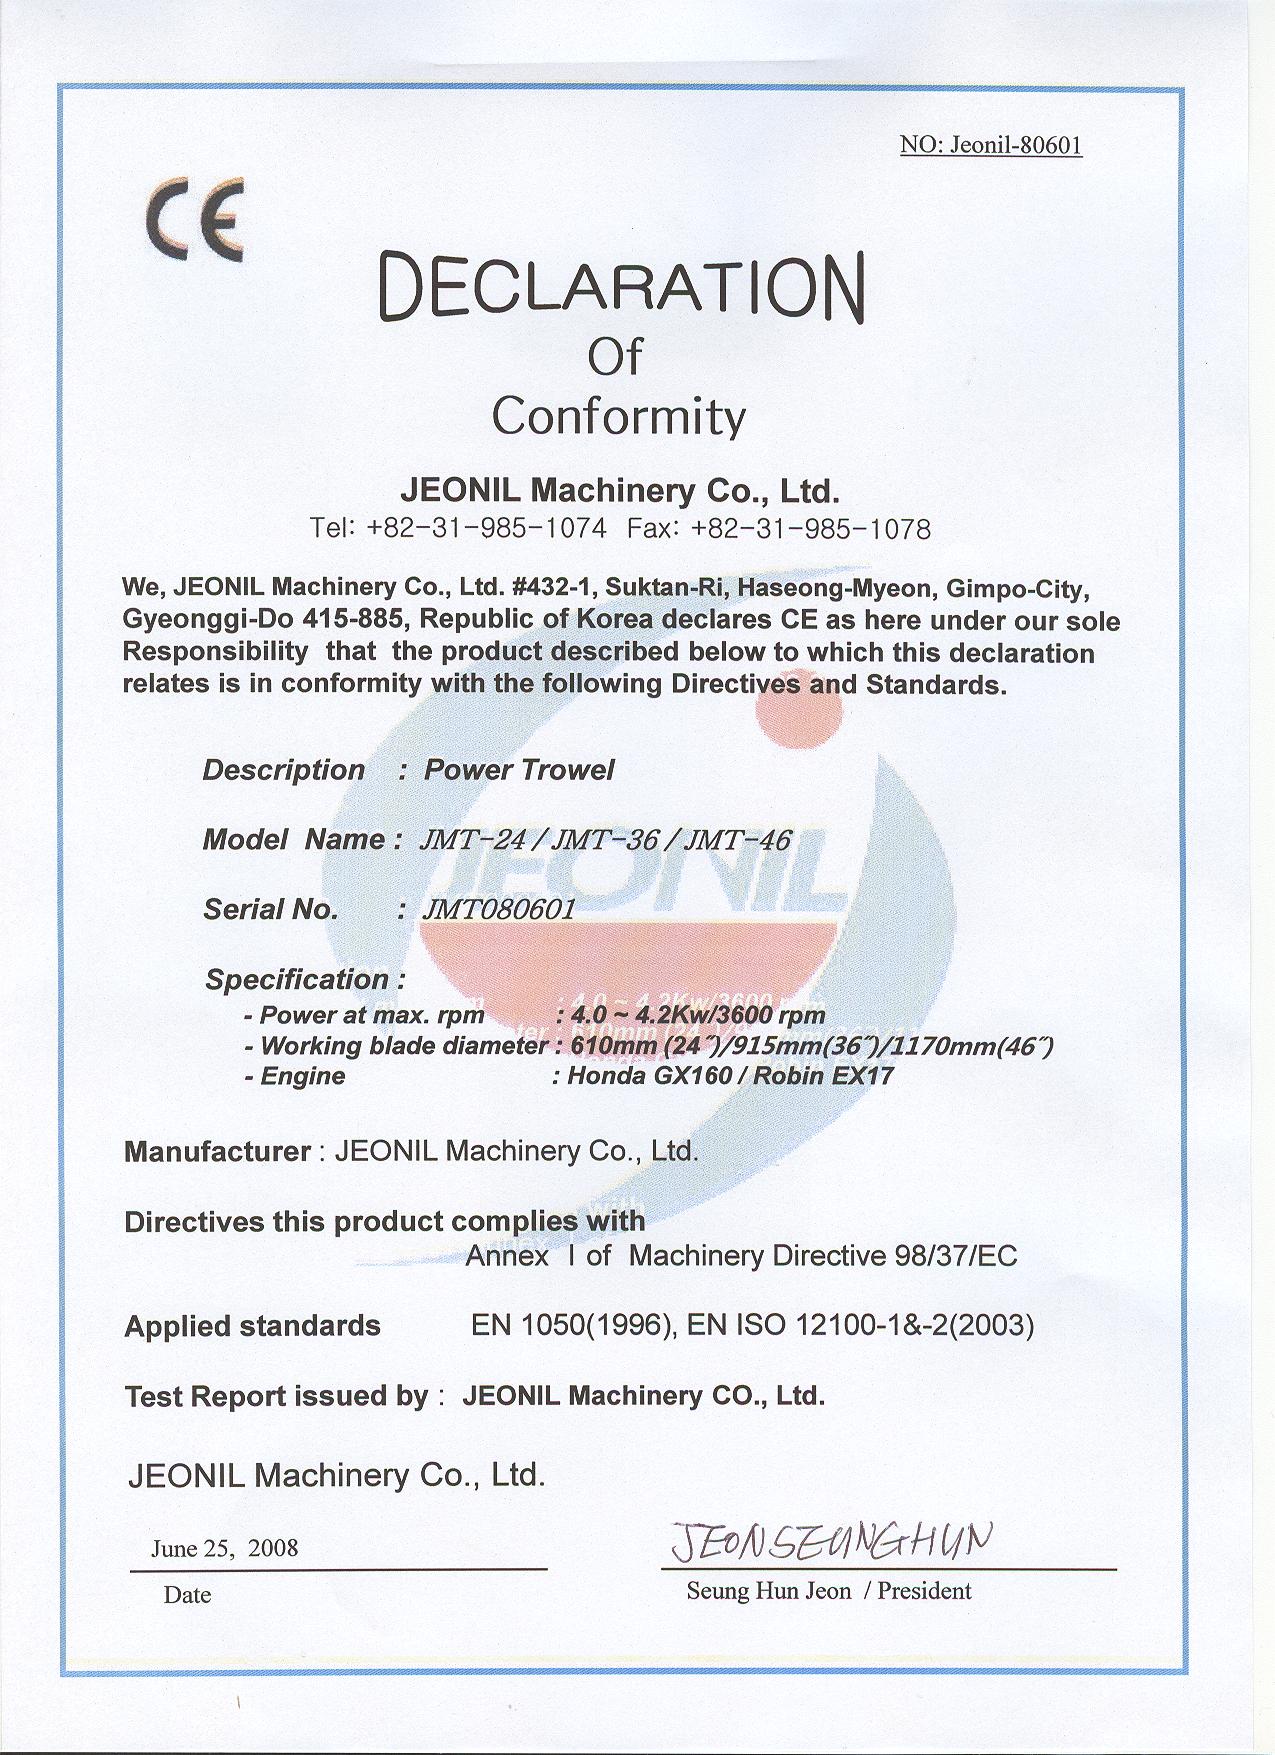 CE Certificate for JMT Power Trowel.jpg